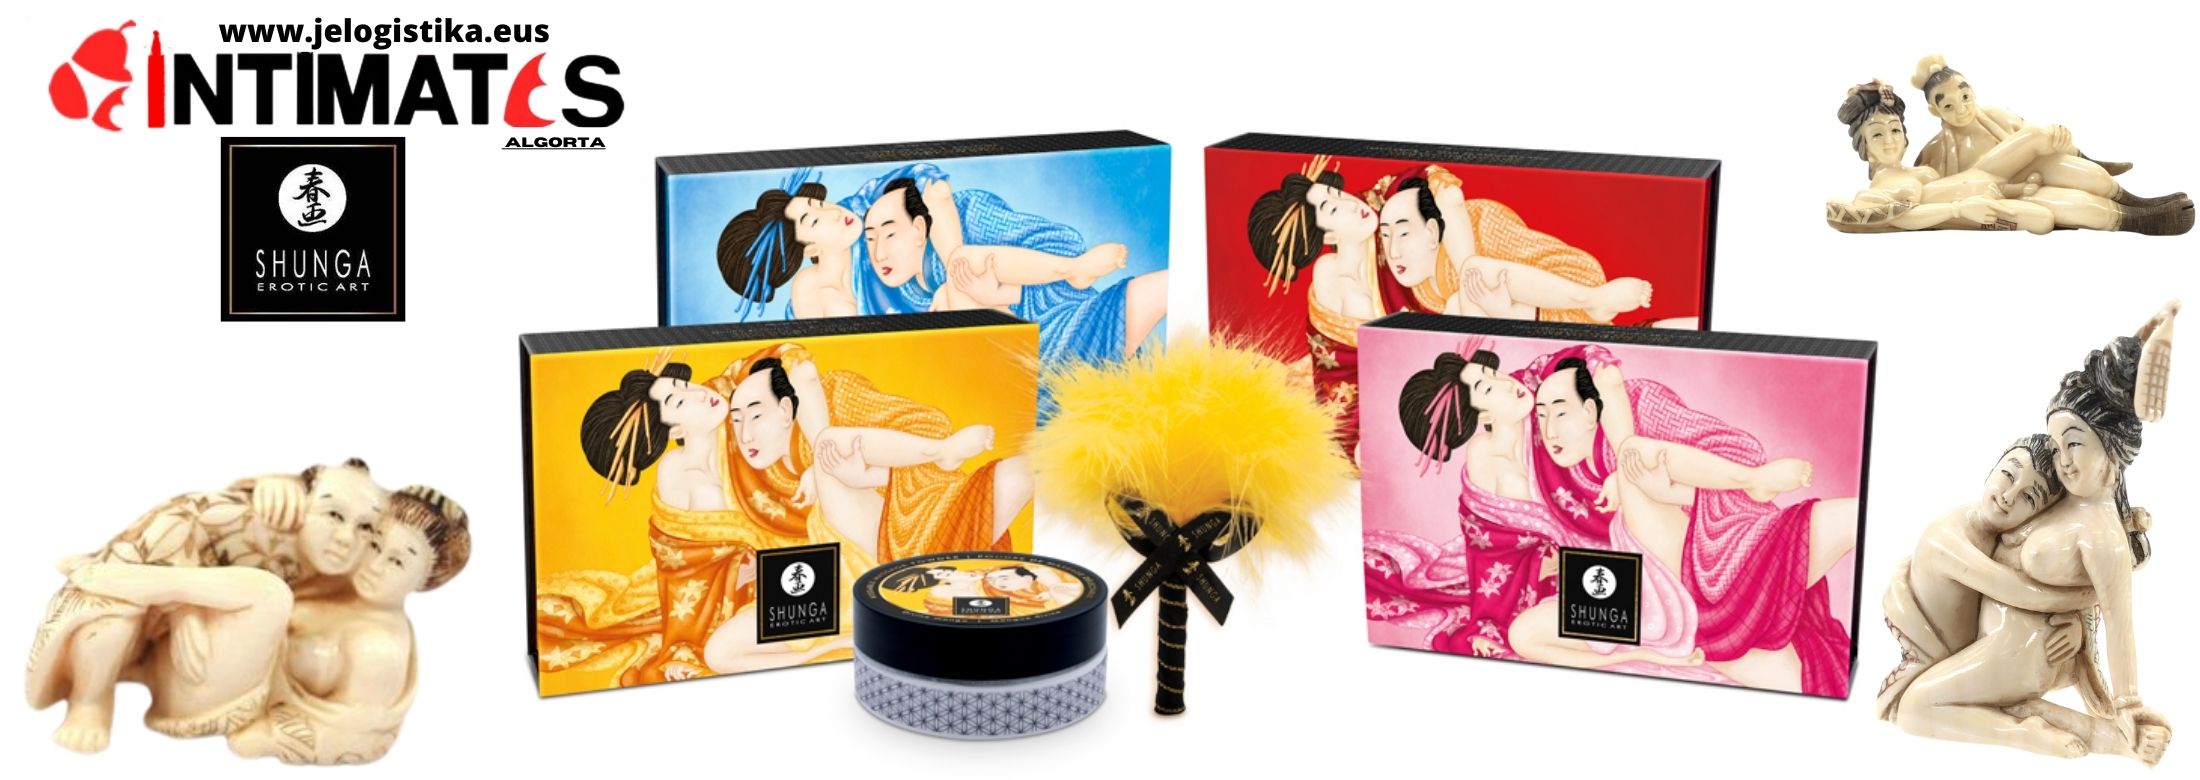 Shunga ofrece Lovebath un nuevo producto inspirado en el ritual sensual de "Los baños de amor" japoneses donde se privilegiaba la sensualidad y el erotismo, que puedes adquirir en intimates.es "Tu Personal Shopper Erótico Online"